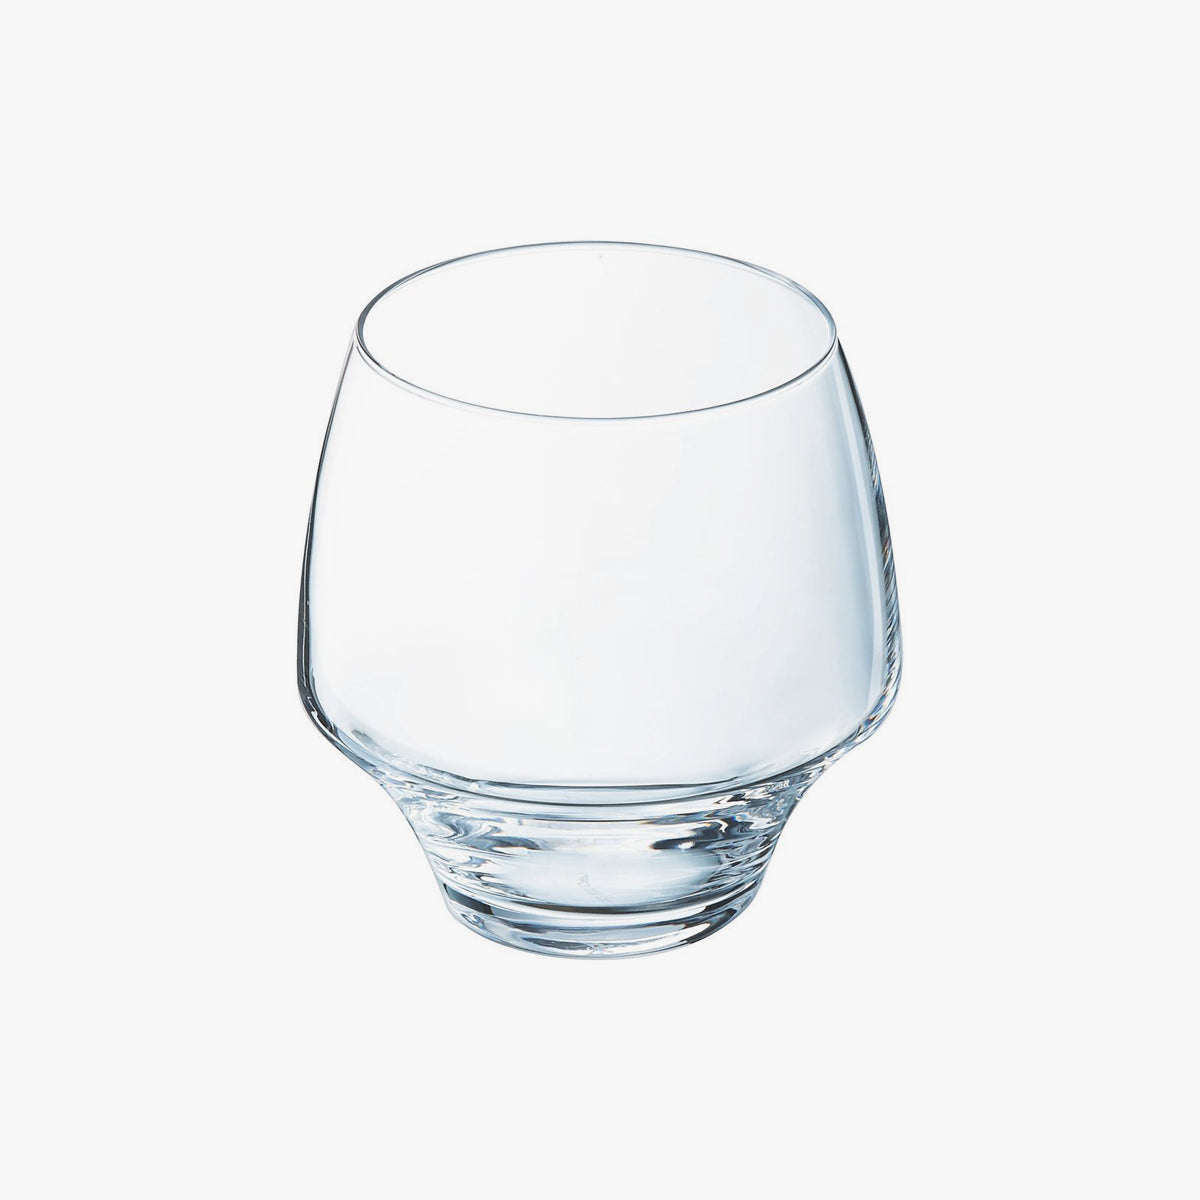 薄いガラスのソムリエコップ 2個セット